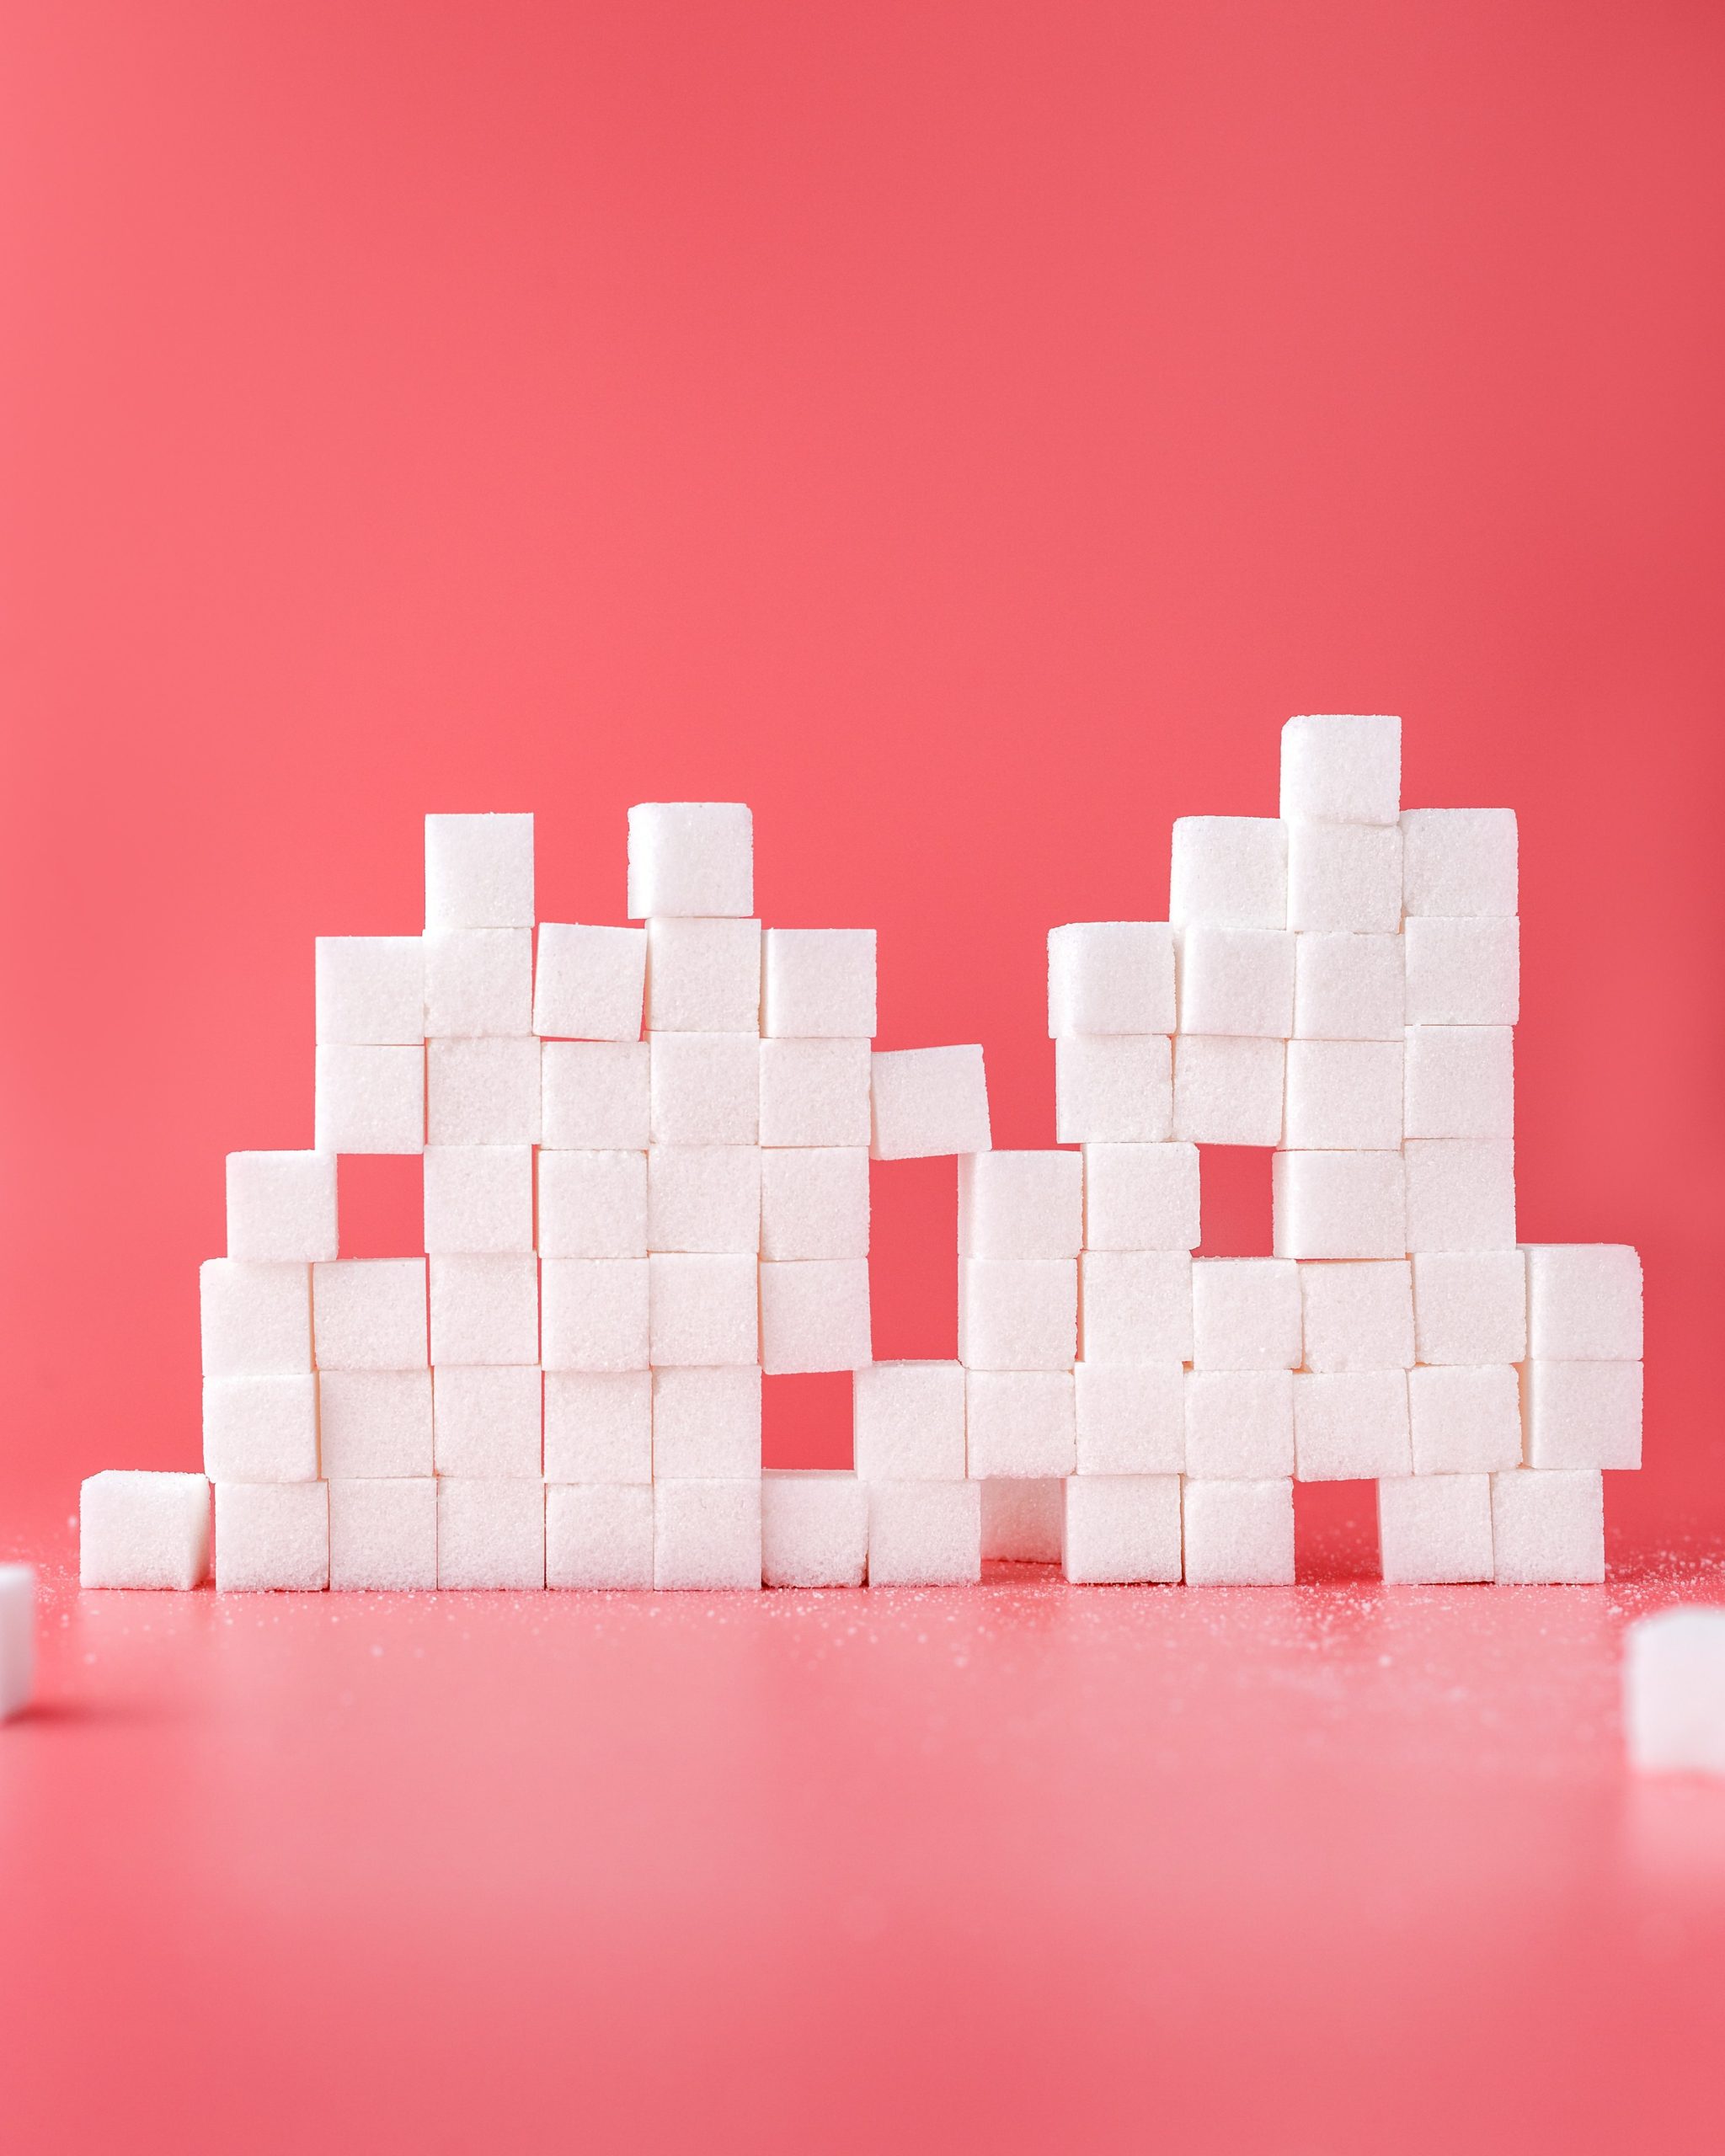 Comment l'excès de sucre dérègle nos cellules